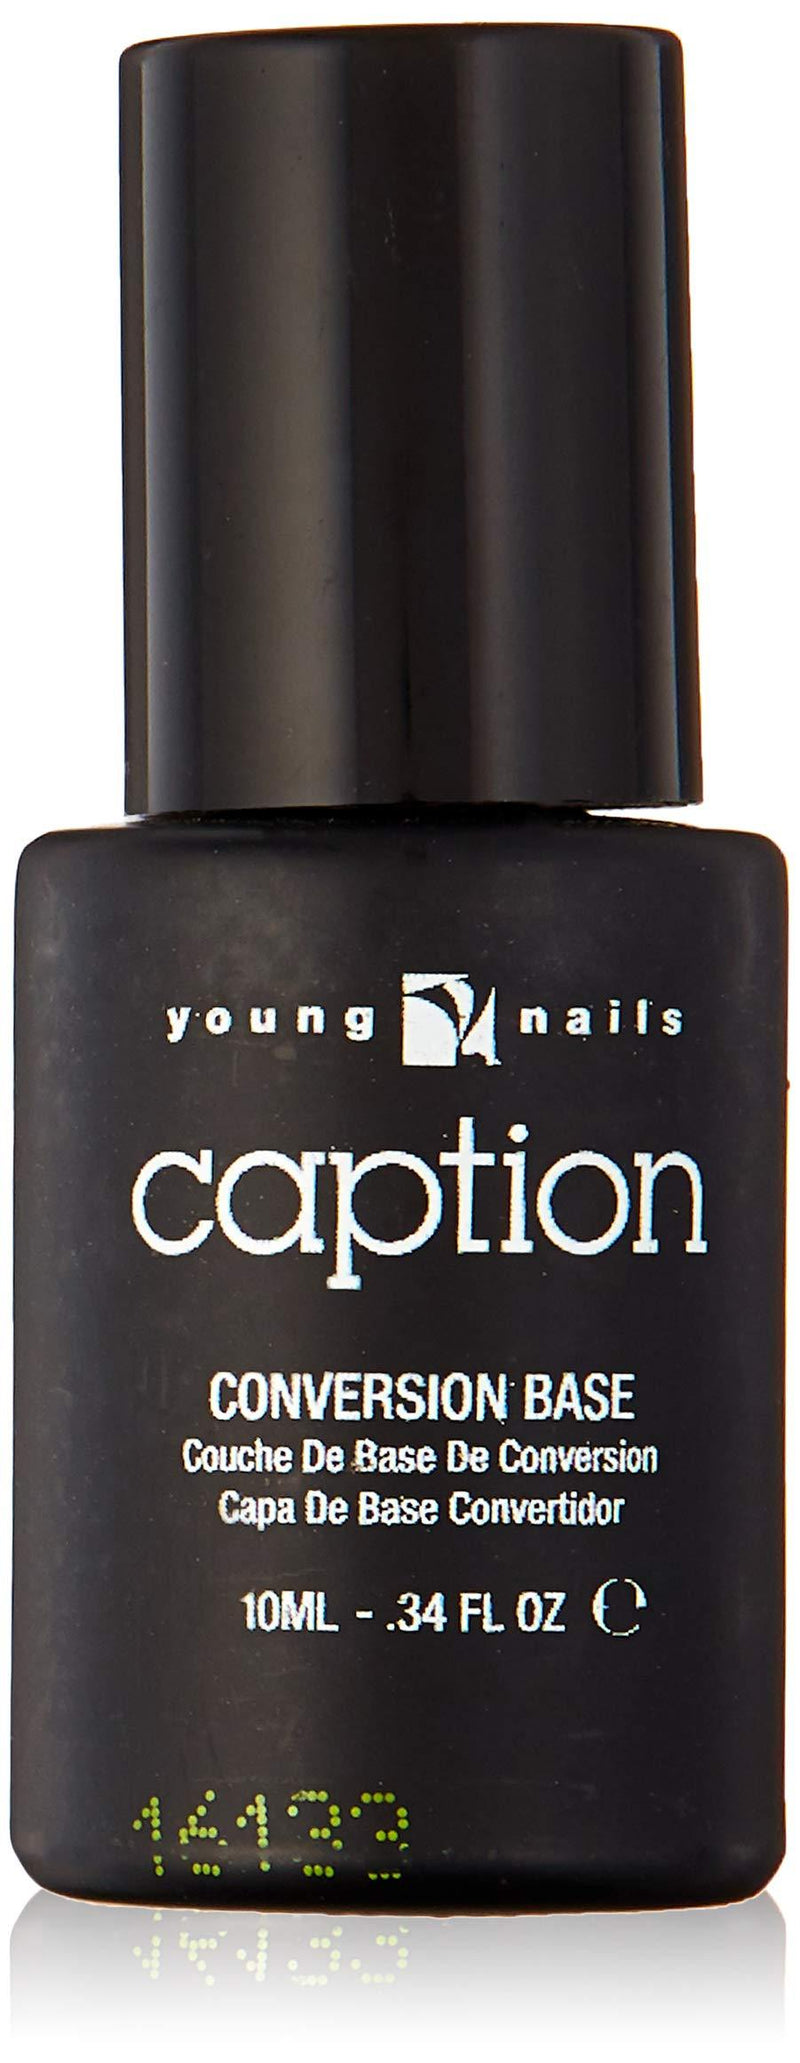 Young Nails Caption Nail Polish, Conversion Base - BeesActive Australia